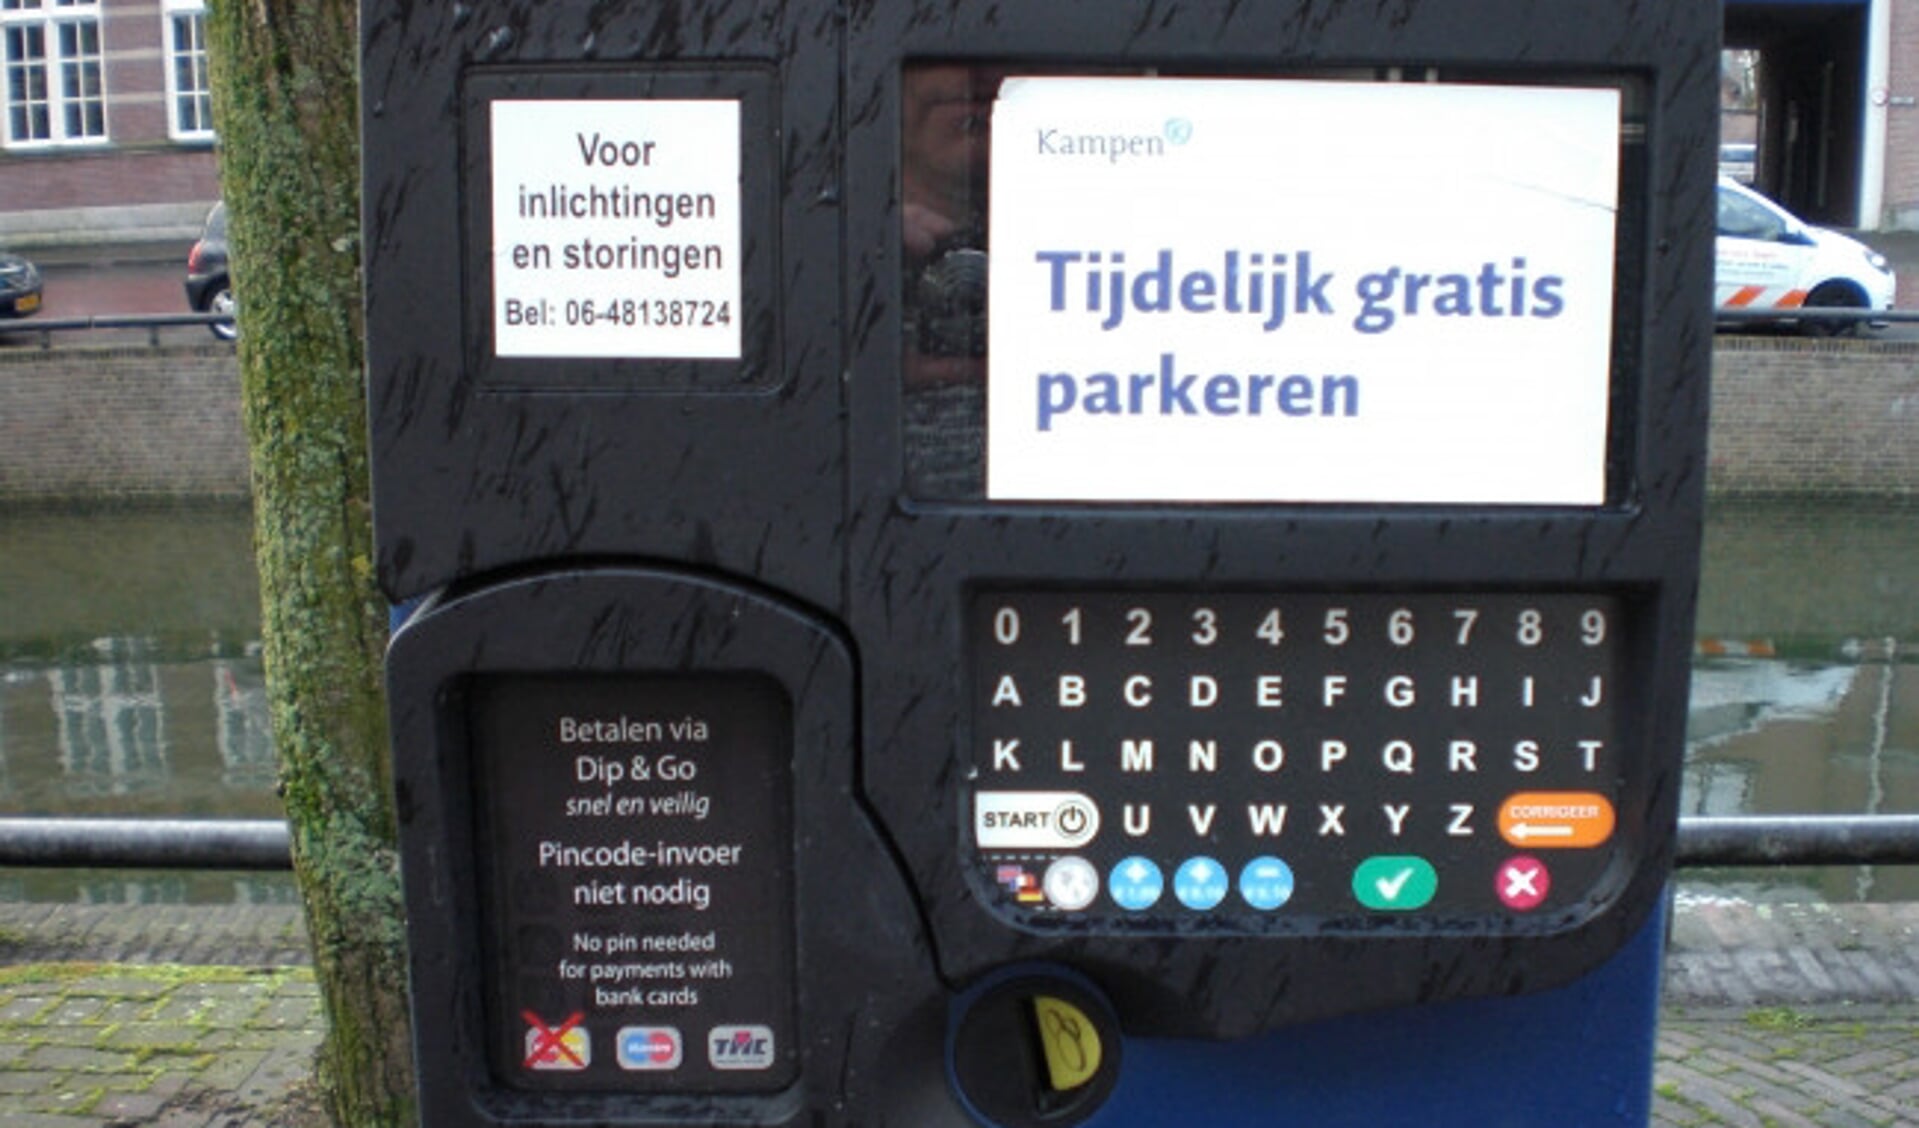  Het kentekenparkeren in Kampen heeft nogal wat problemen gekend. In december 2014 kon door een storing een tijdlang niet betaald worden.